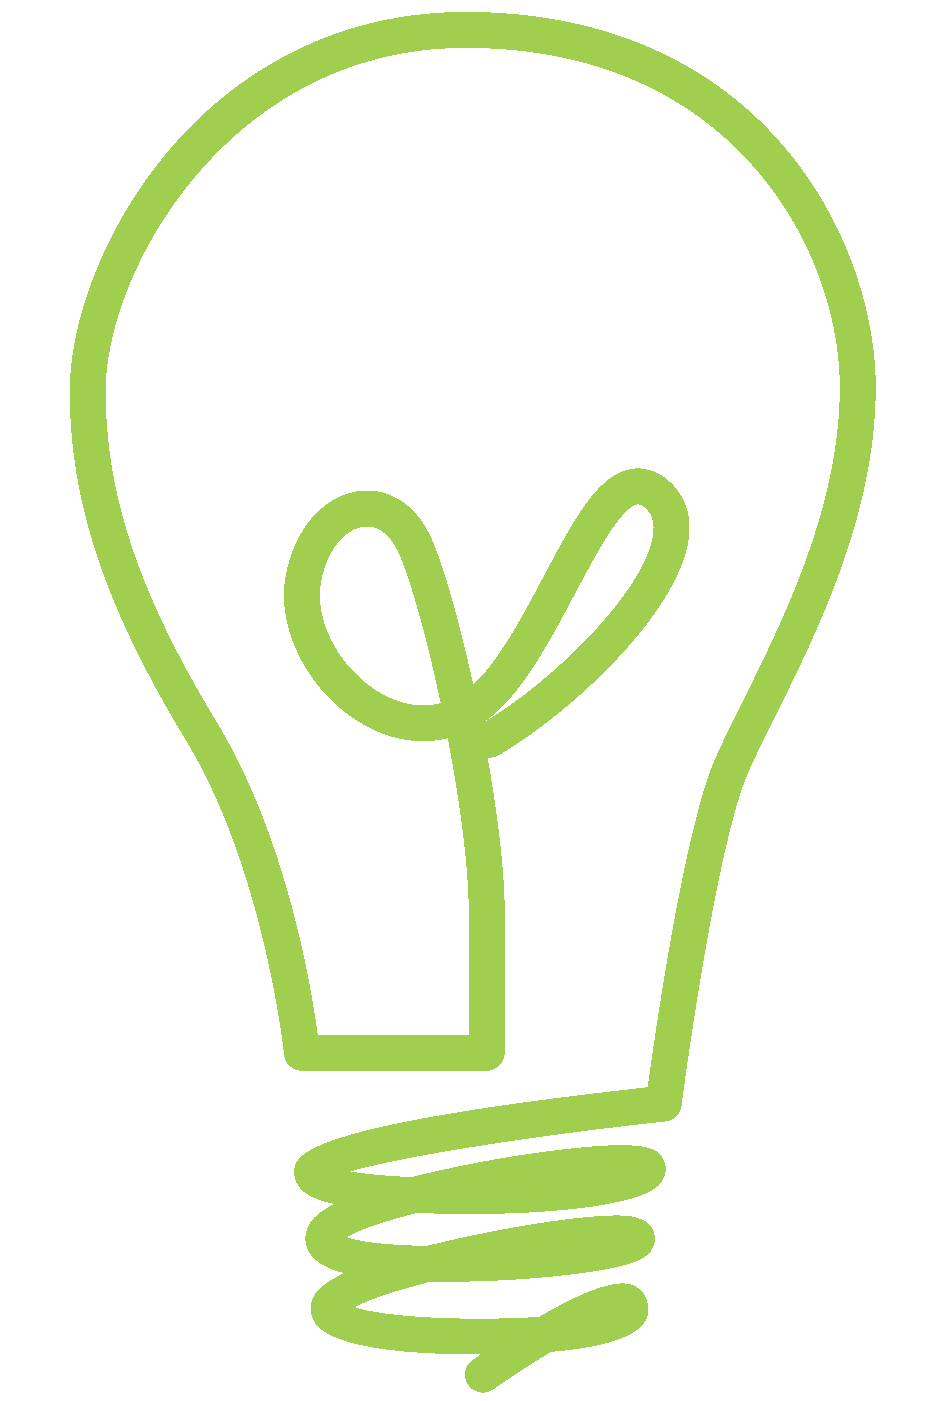 Lightbulb Clipart Sketch Lightbulb Sketch Transparent Free For Download On Webstockreview 2020